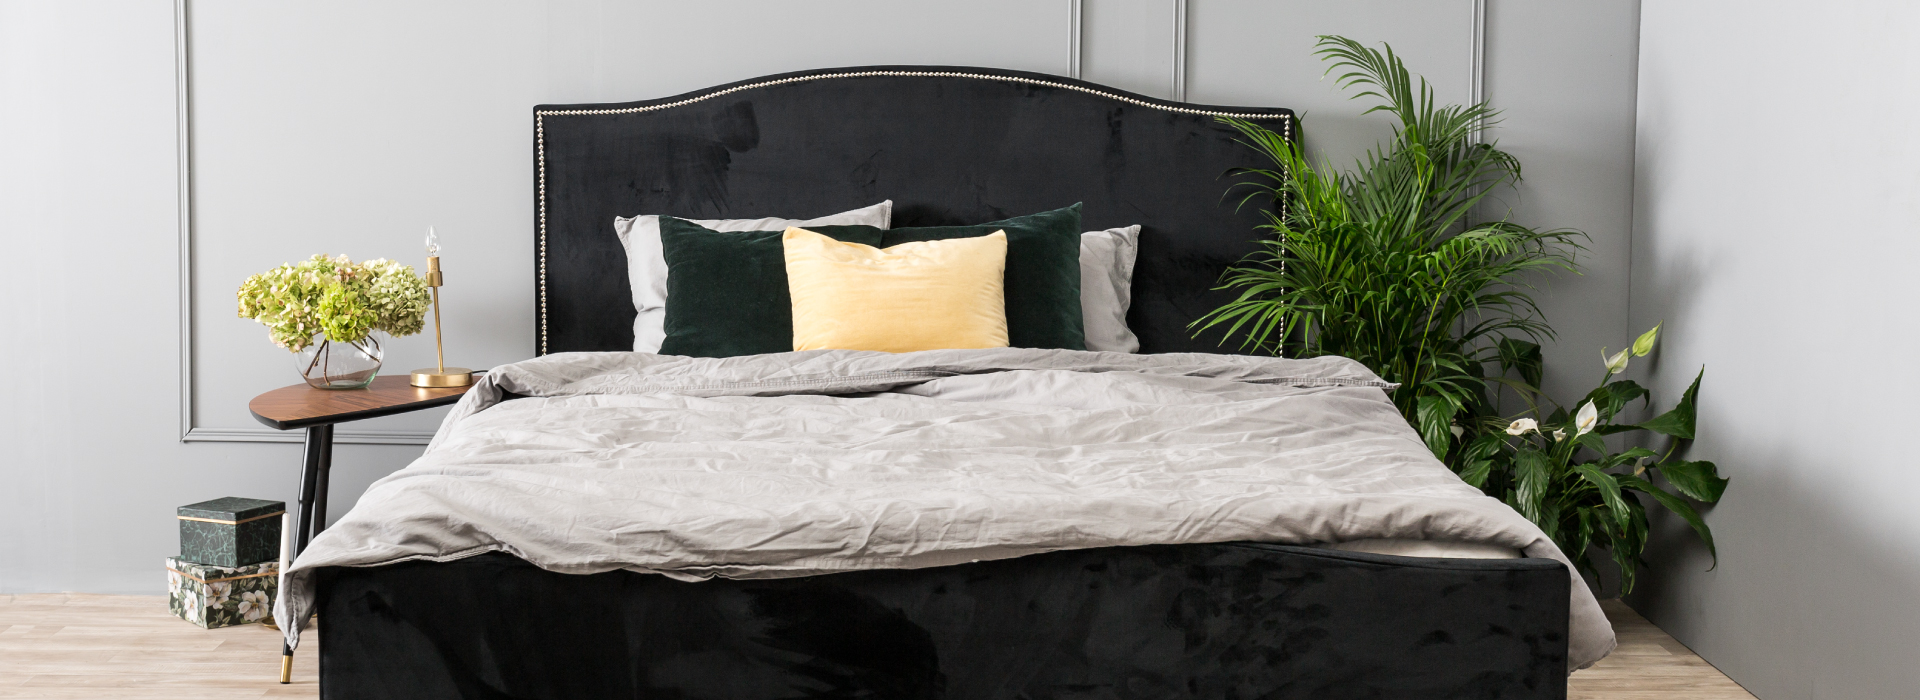 Granatowe łóżko obite welurową tkaniną ze zdobnym zagłówkiem, obok łóżka rośliny, a po drugiej stronie drewniany stolik.